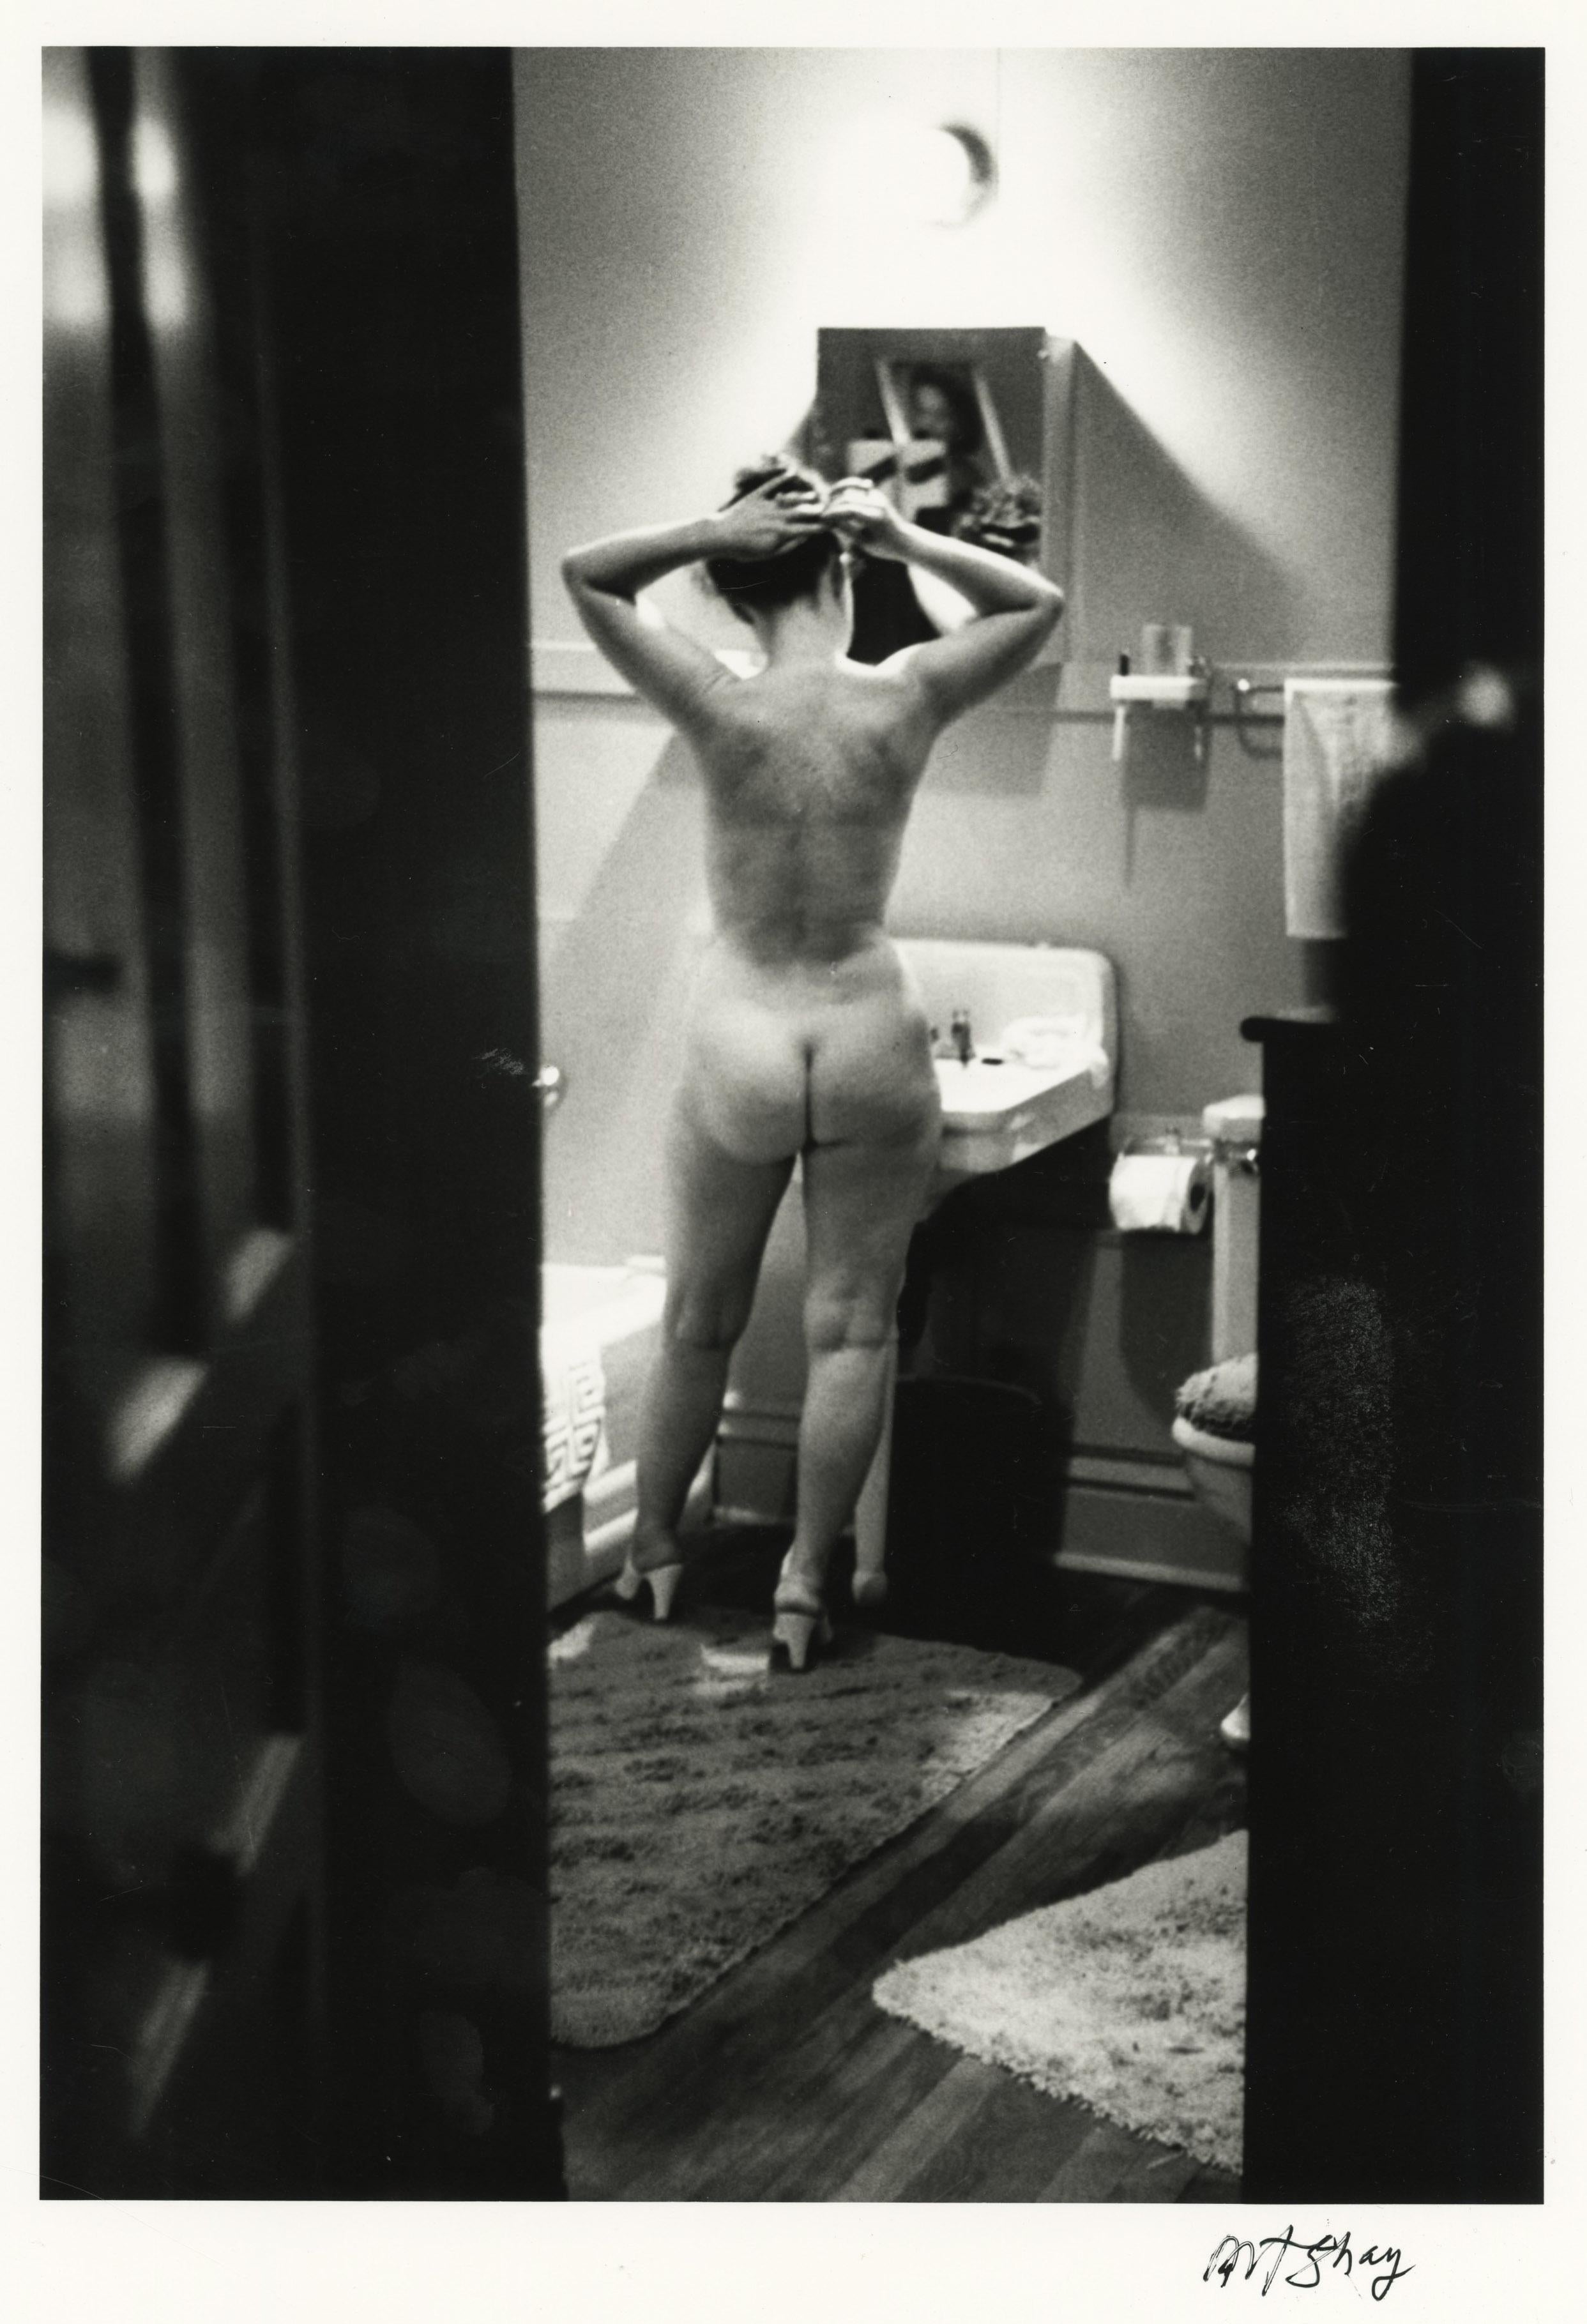 Art Shay Nude Photograph - Simone de Beauvoir